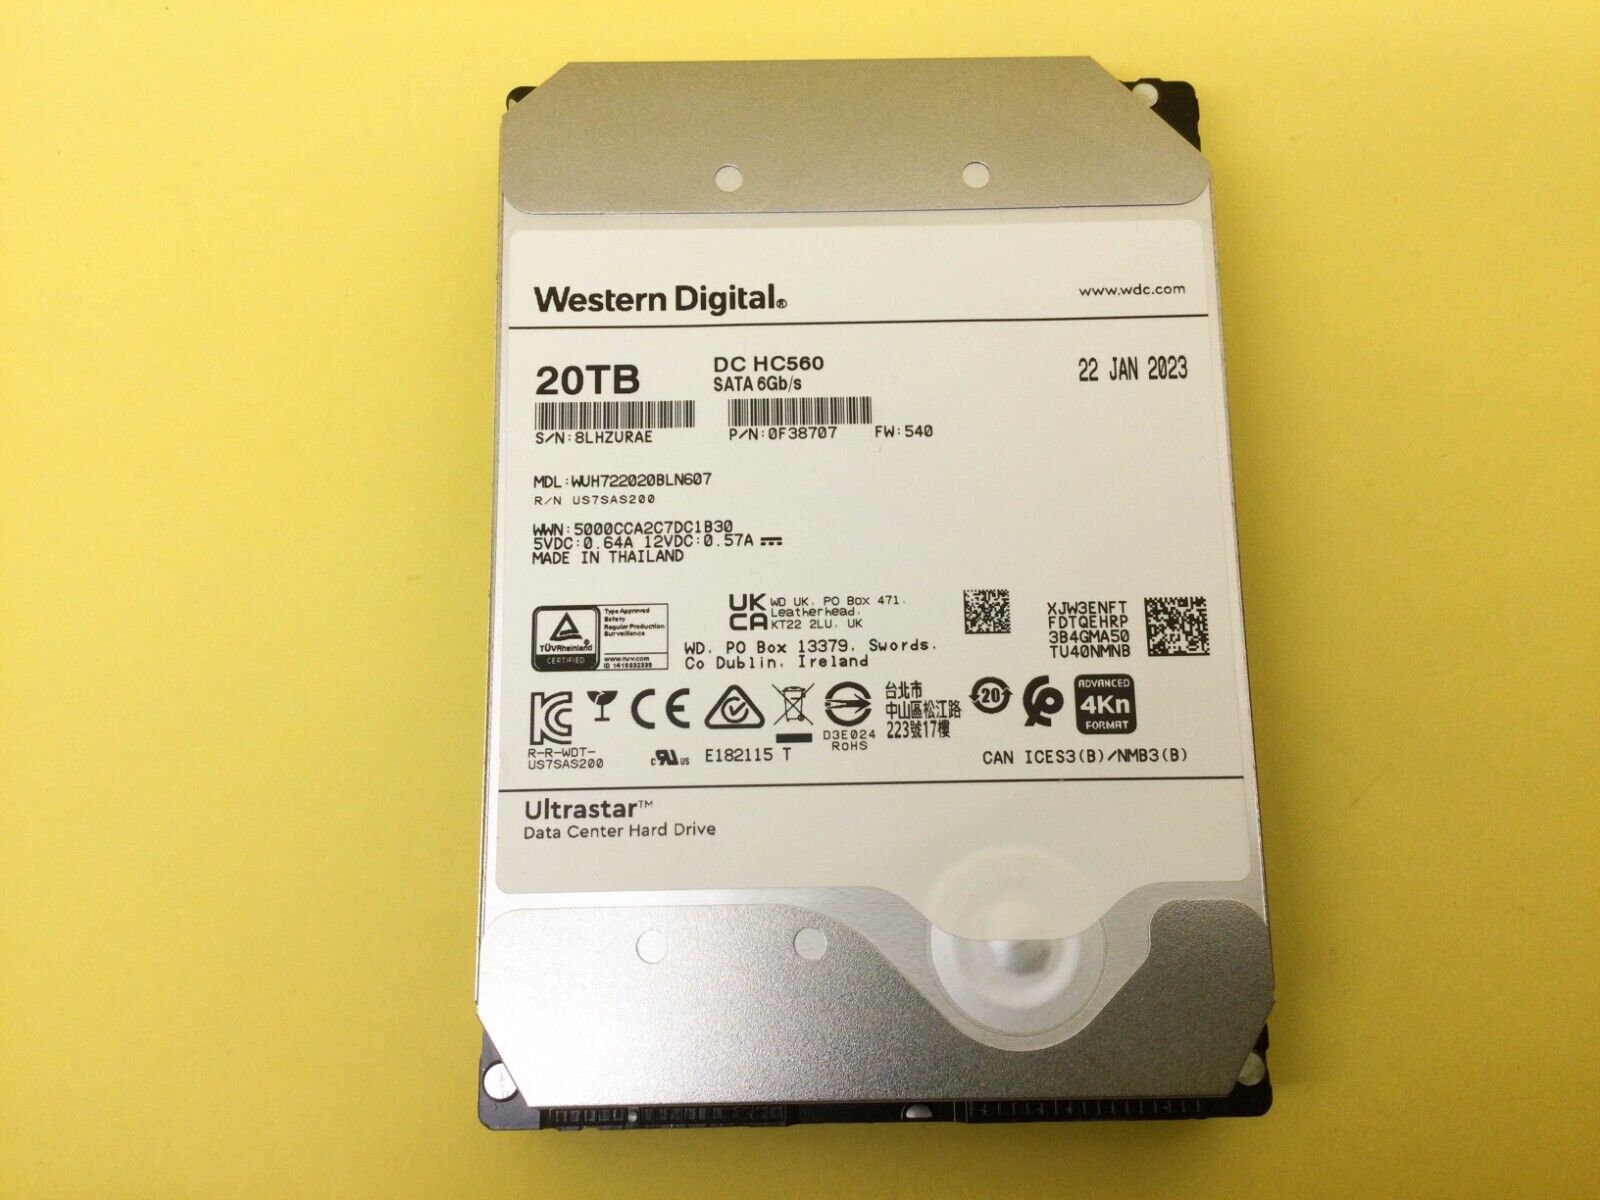 Western Digital DC HC560 20TB 7200 RPM SATA 6Gb/s 3.5in HDD WUH722020BLN607